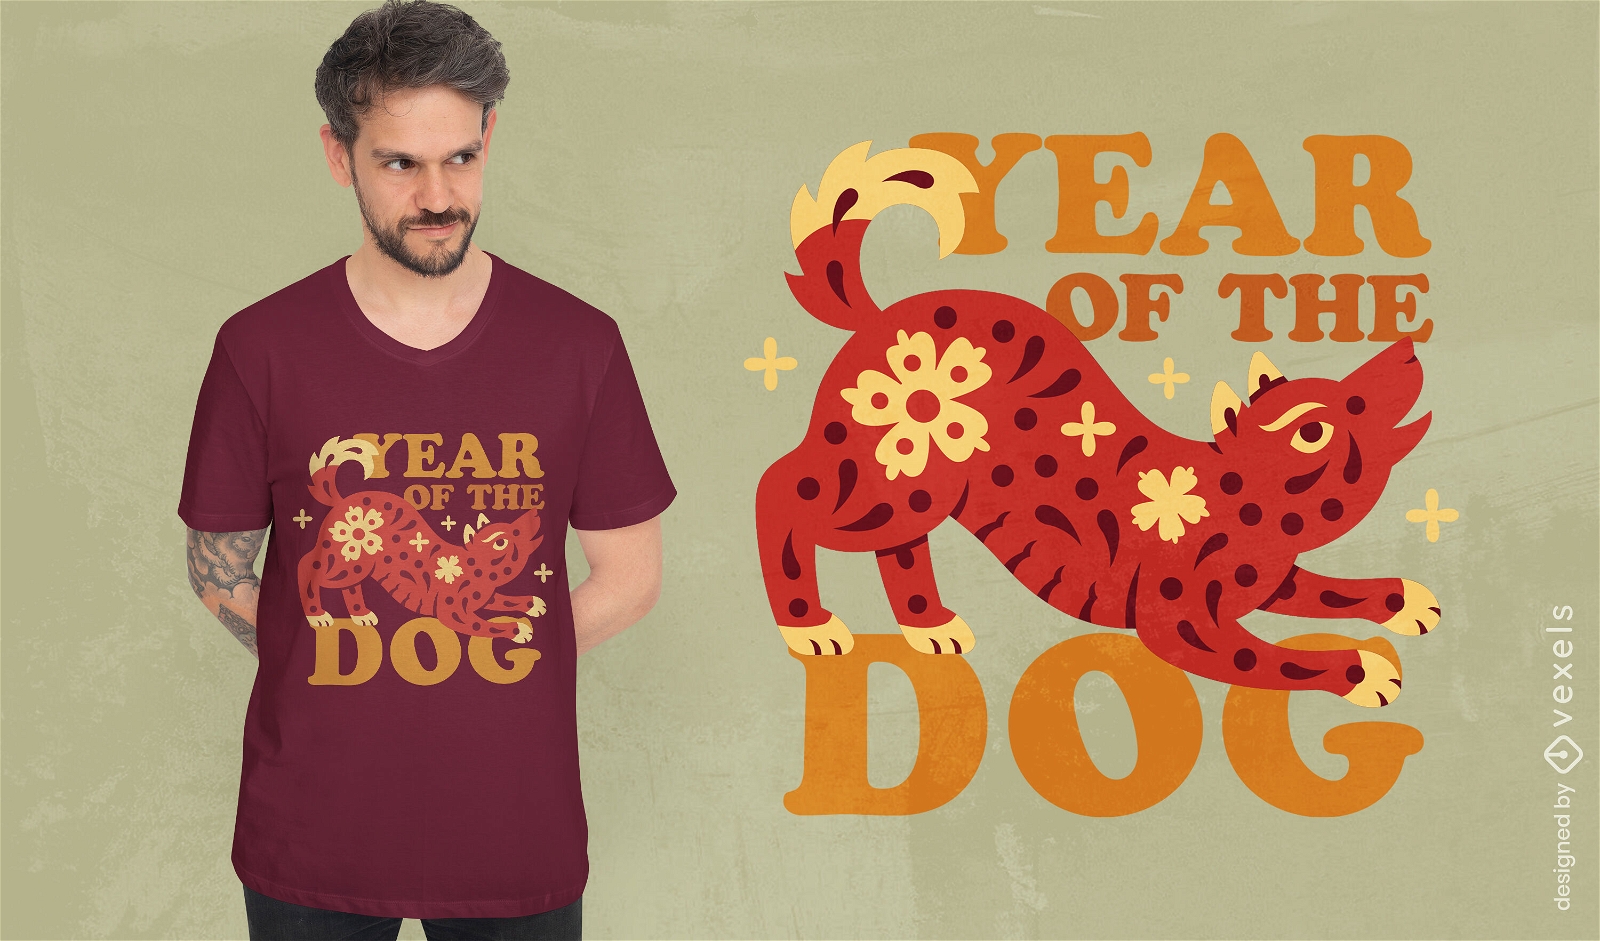 Year of the dog celebration t-shirt design